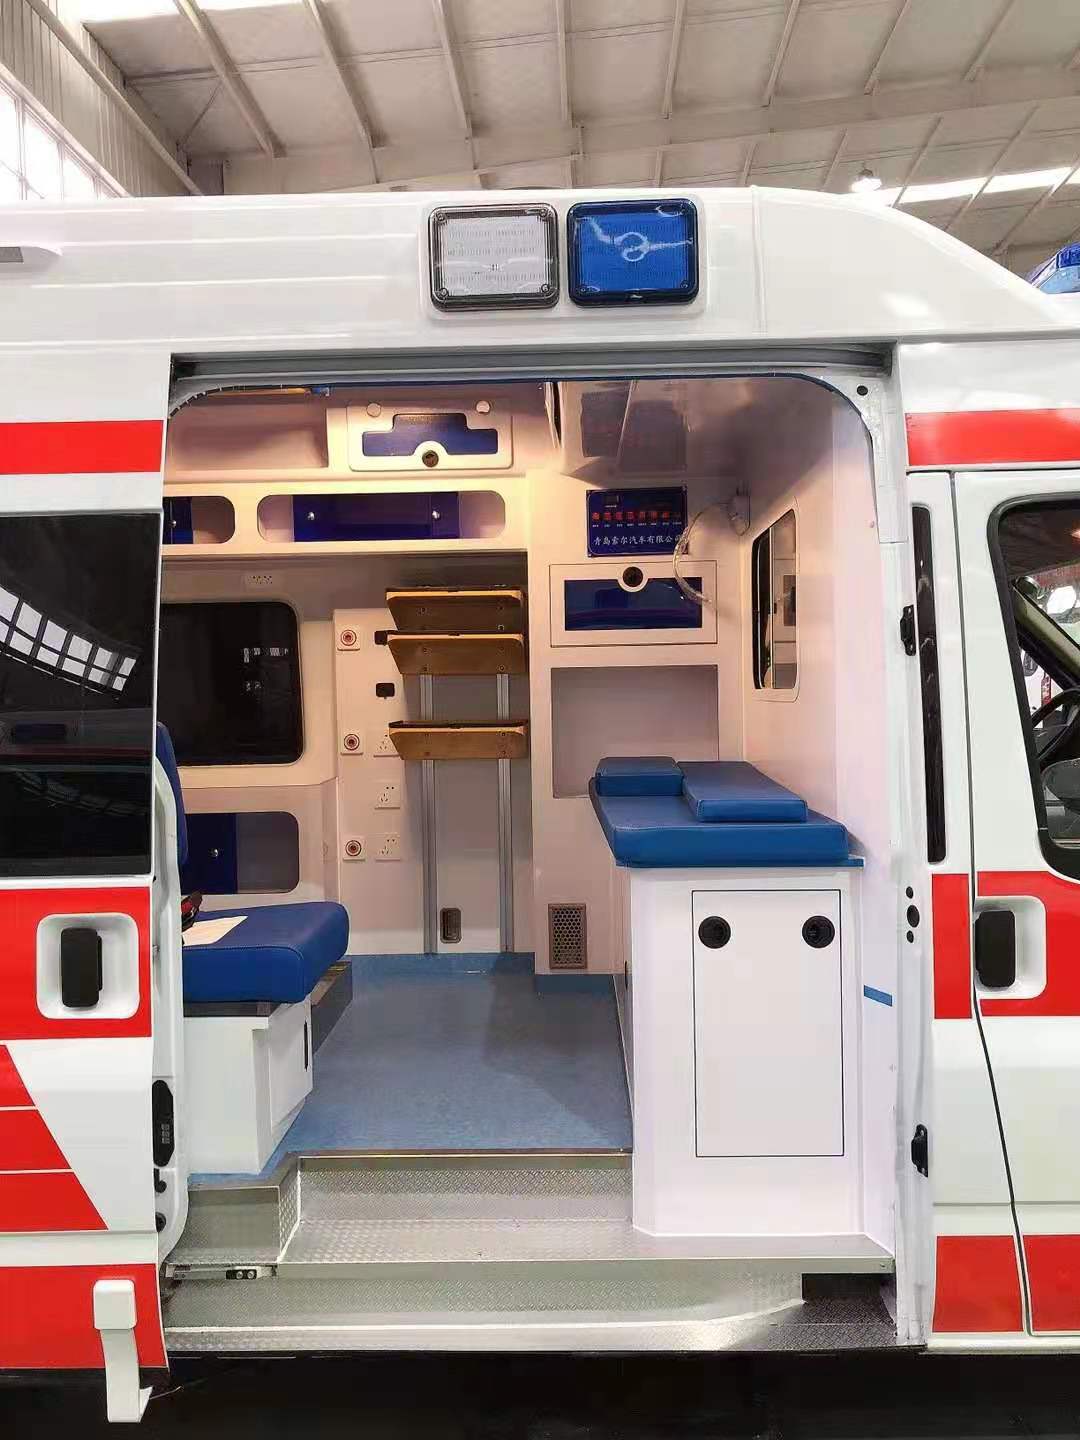 防城港120急救车病人转院车重症救护车出租-实时更新